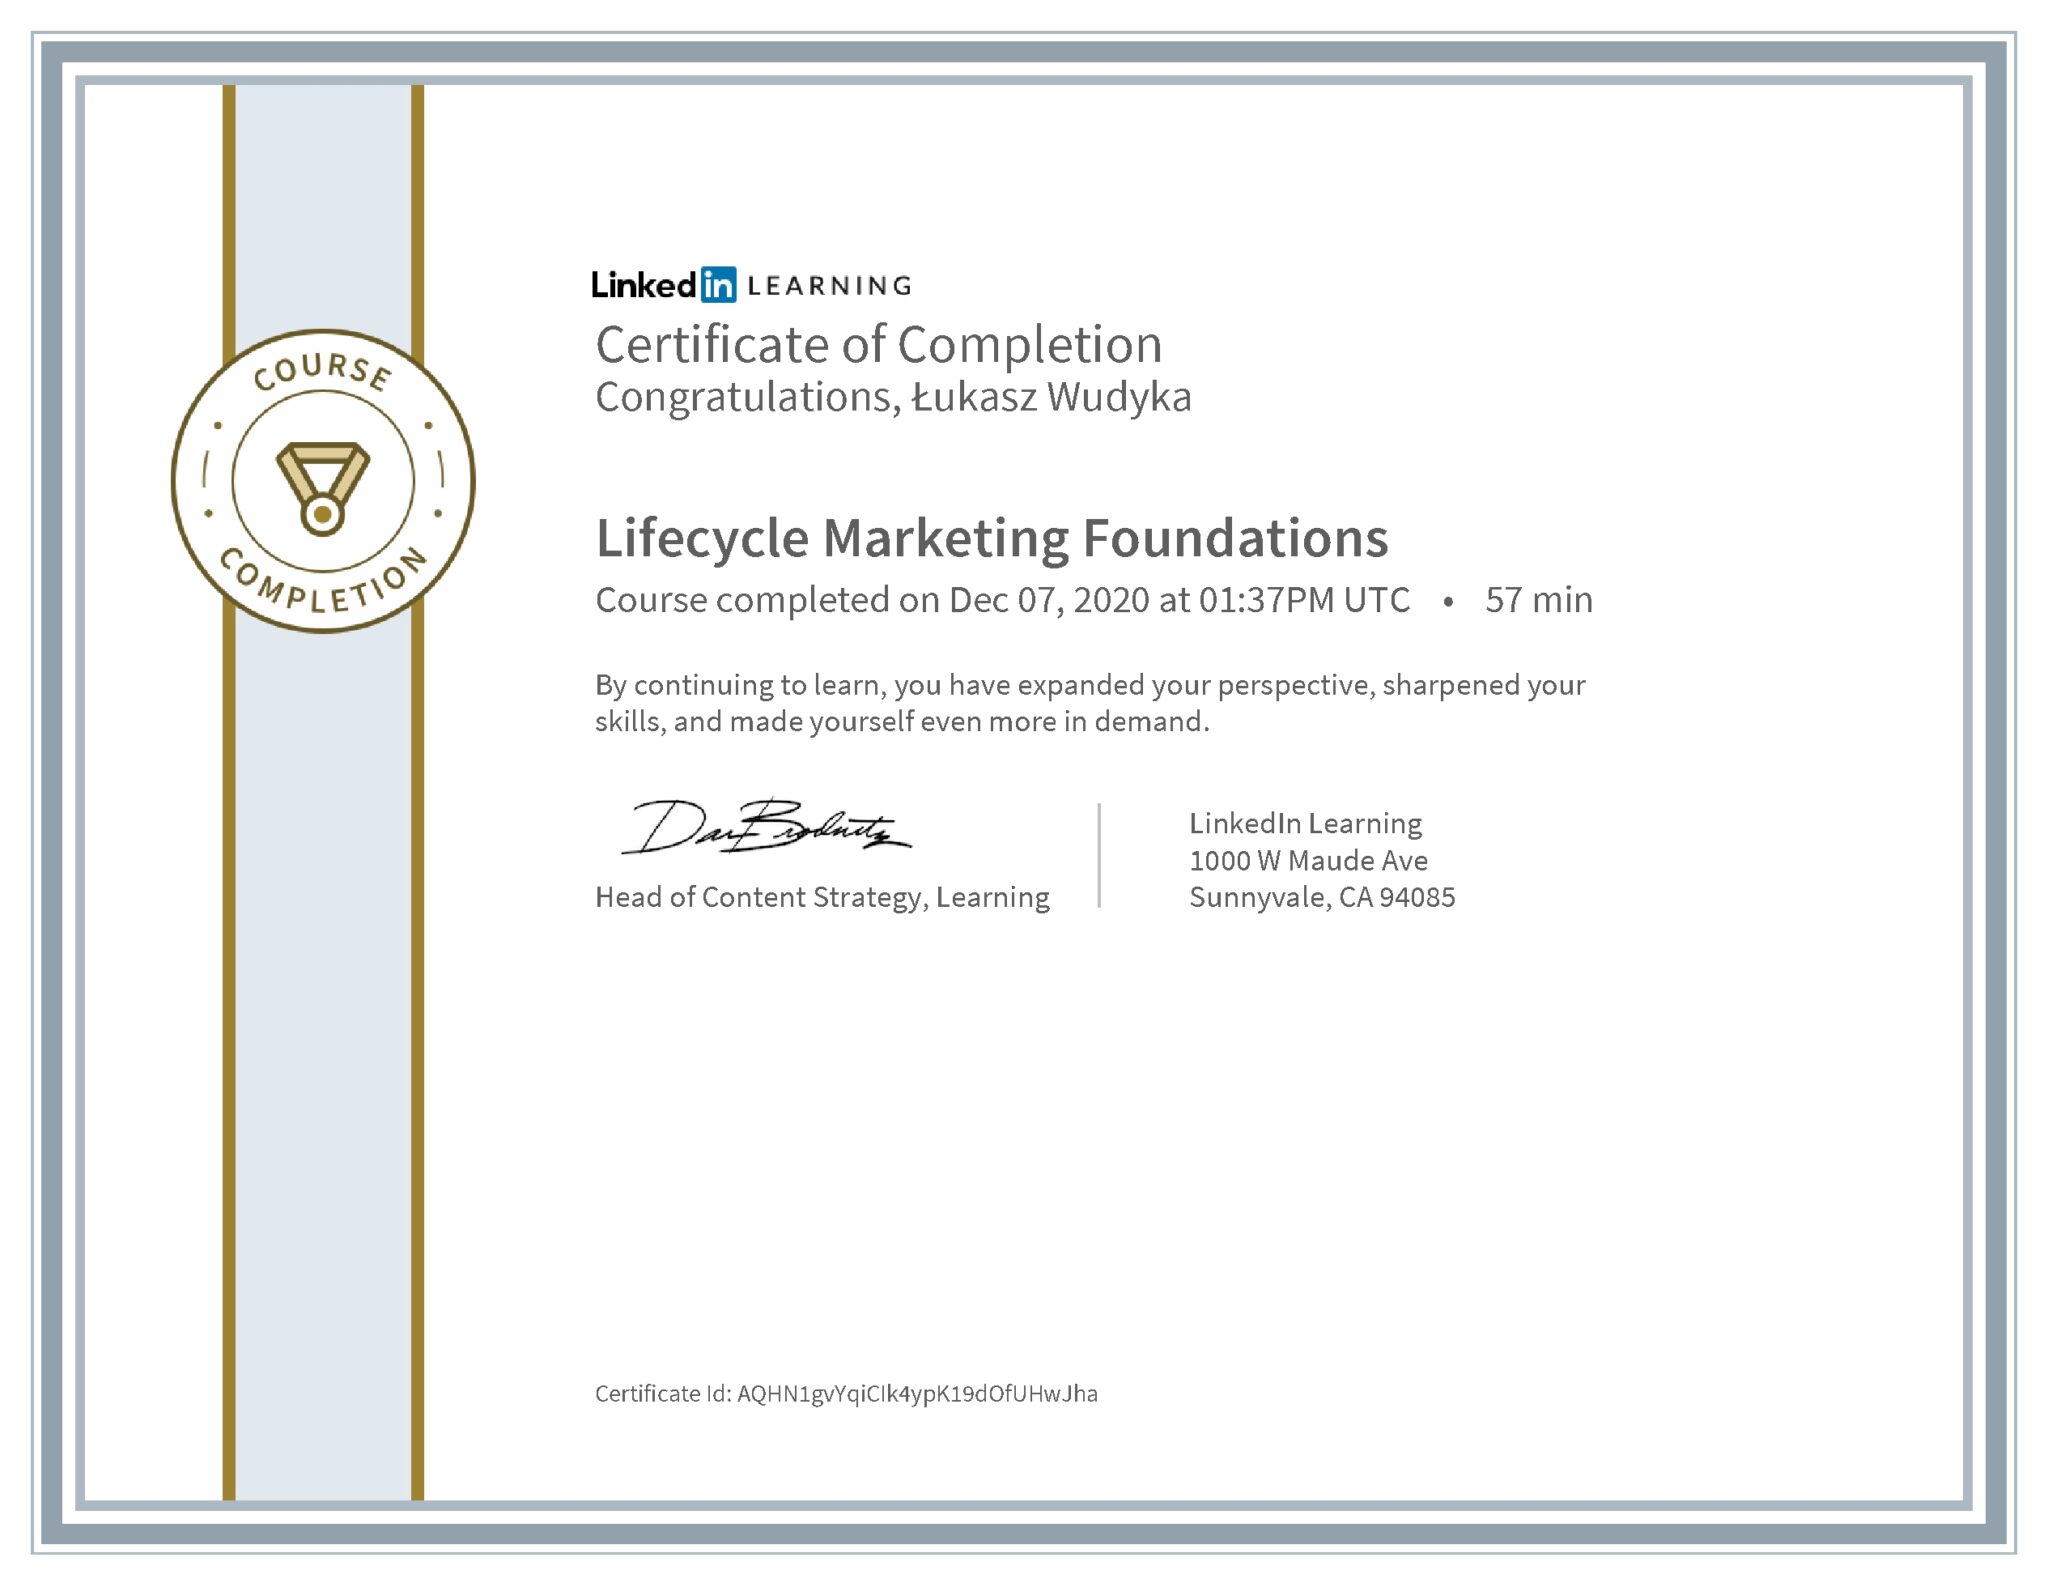 Łukasz Wudyka certyfikat LinkedIn Lifecycle Marketing Foundations